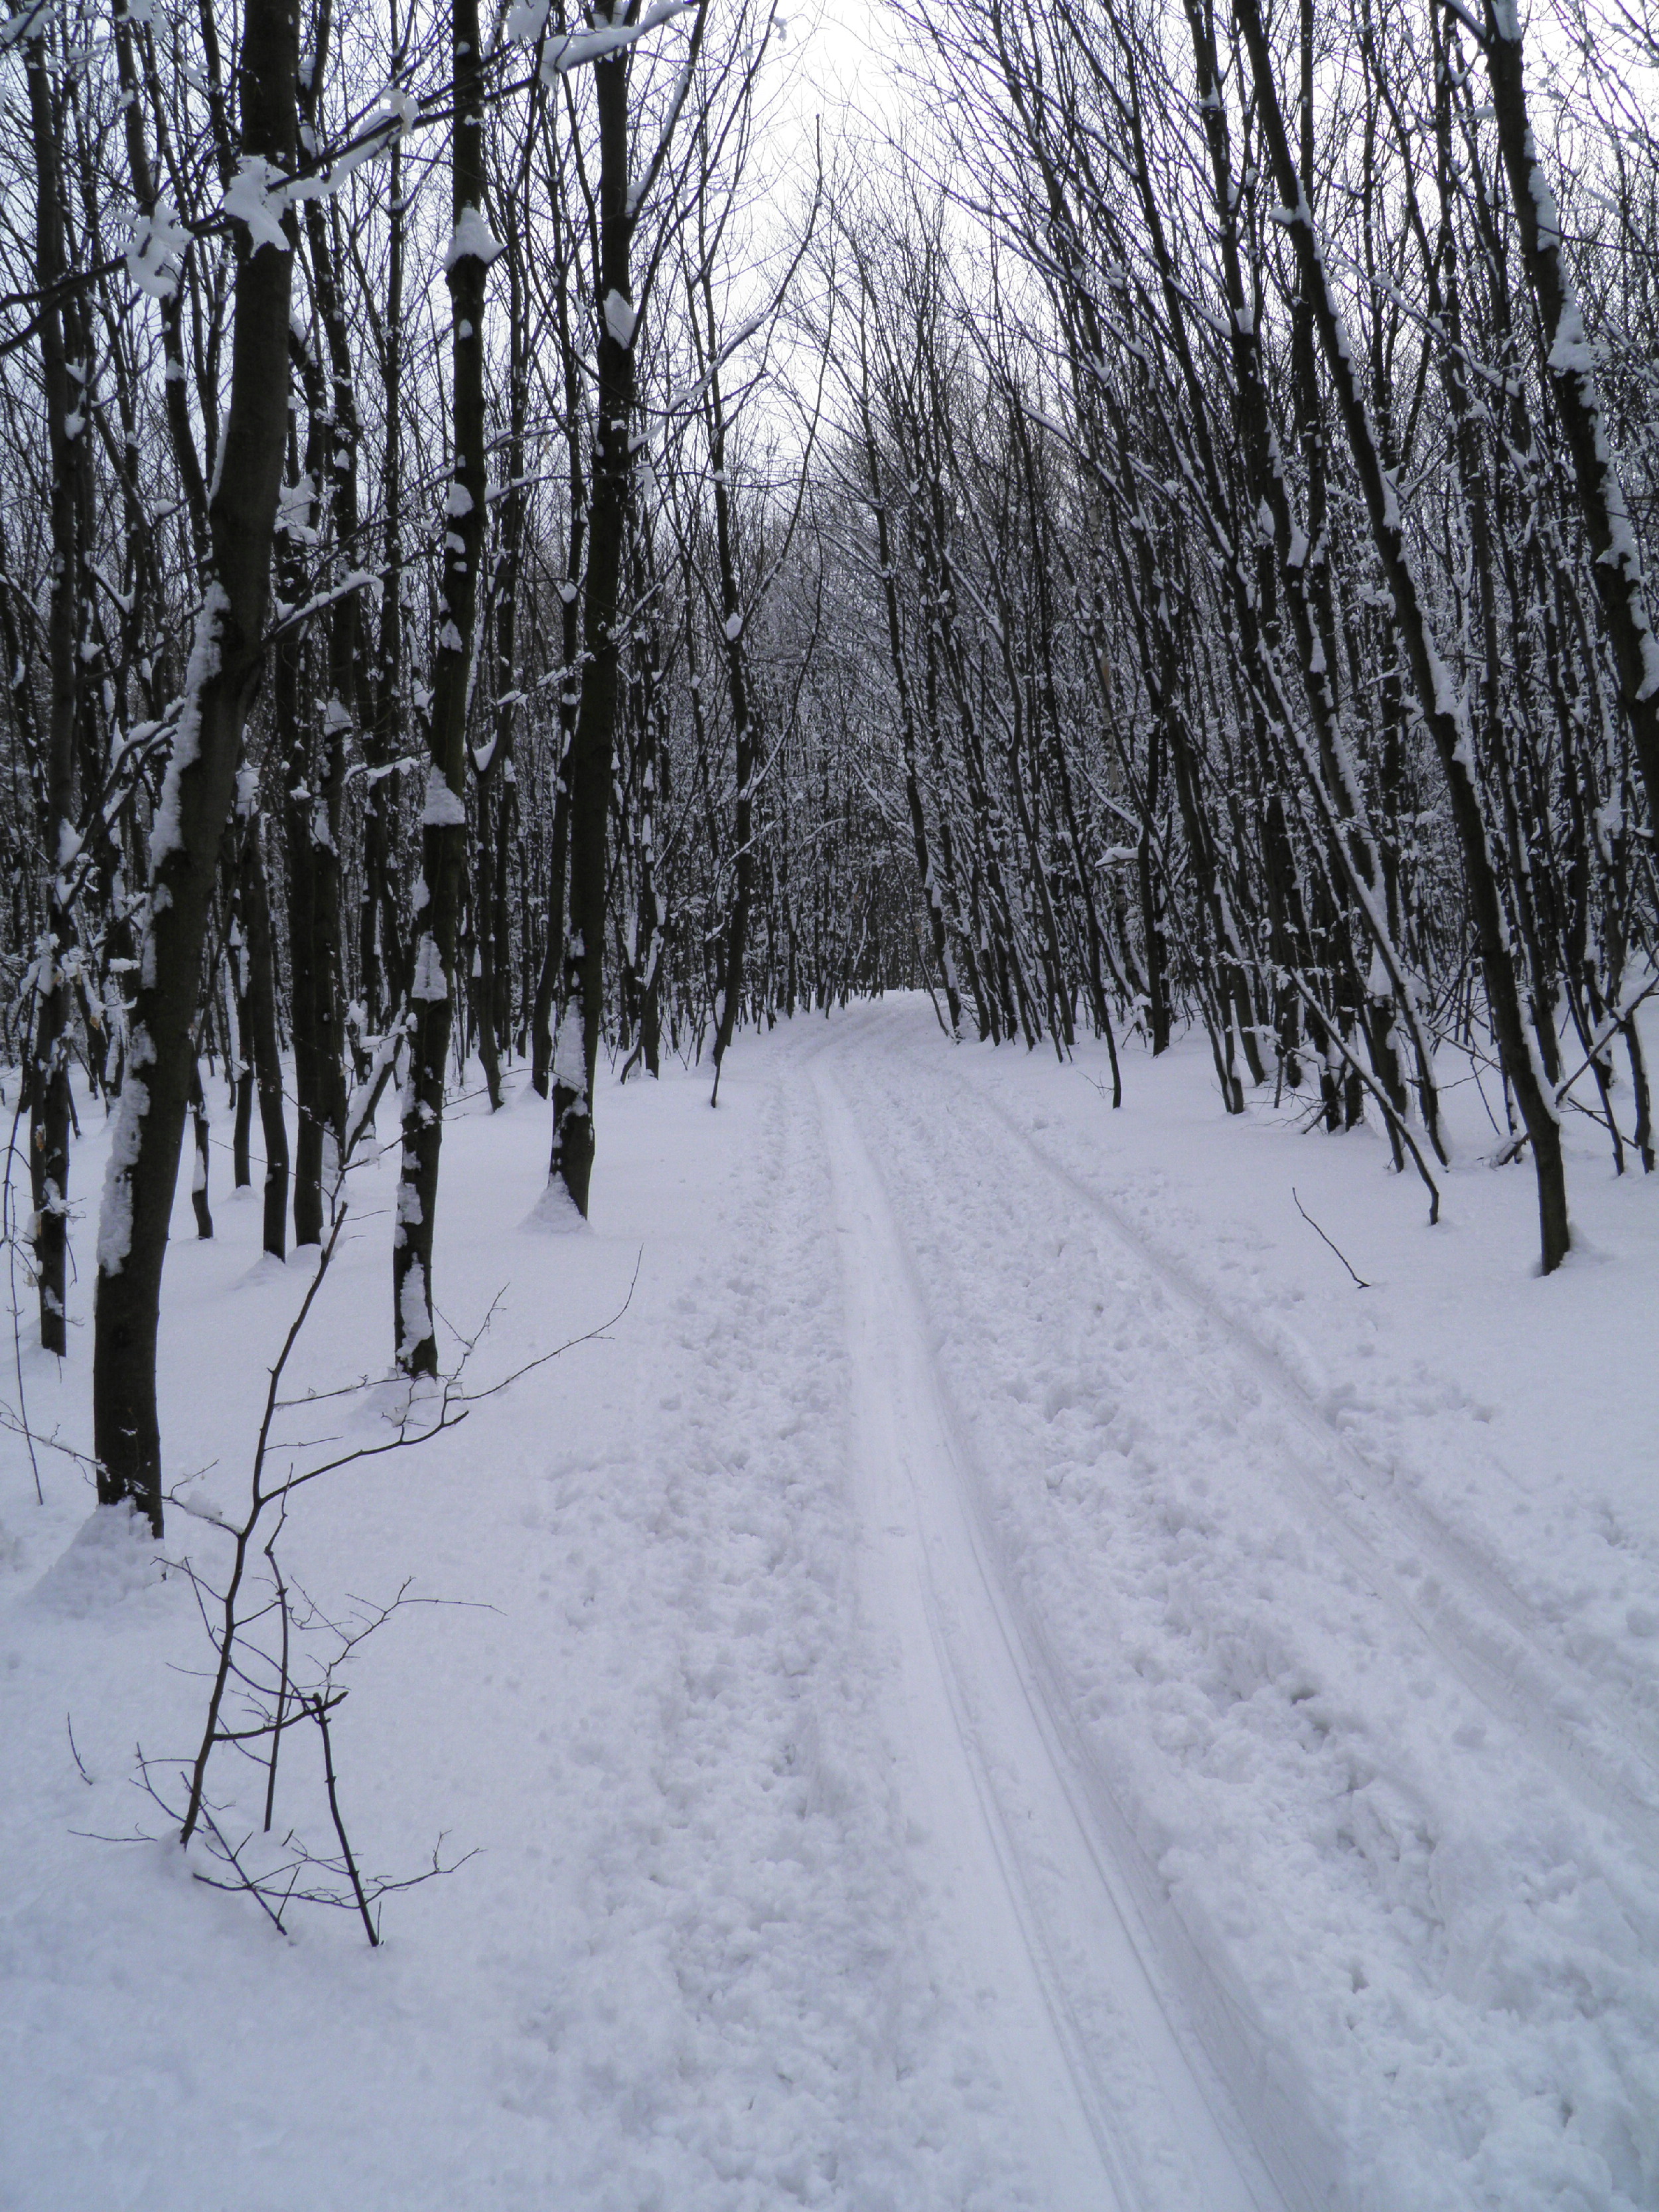 Hrebeň MK, 17.II.2013, 1 km za Malým Javorníkom, 550 m n.m., 55 cm snehu